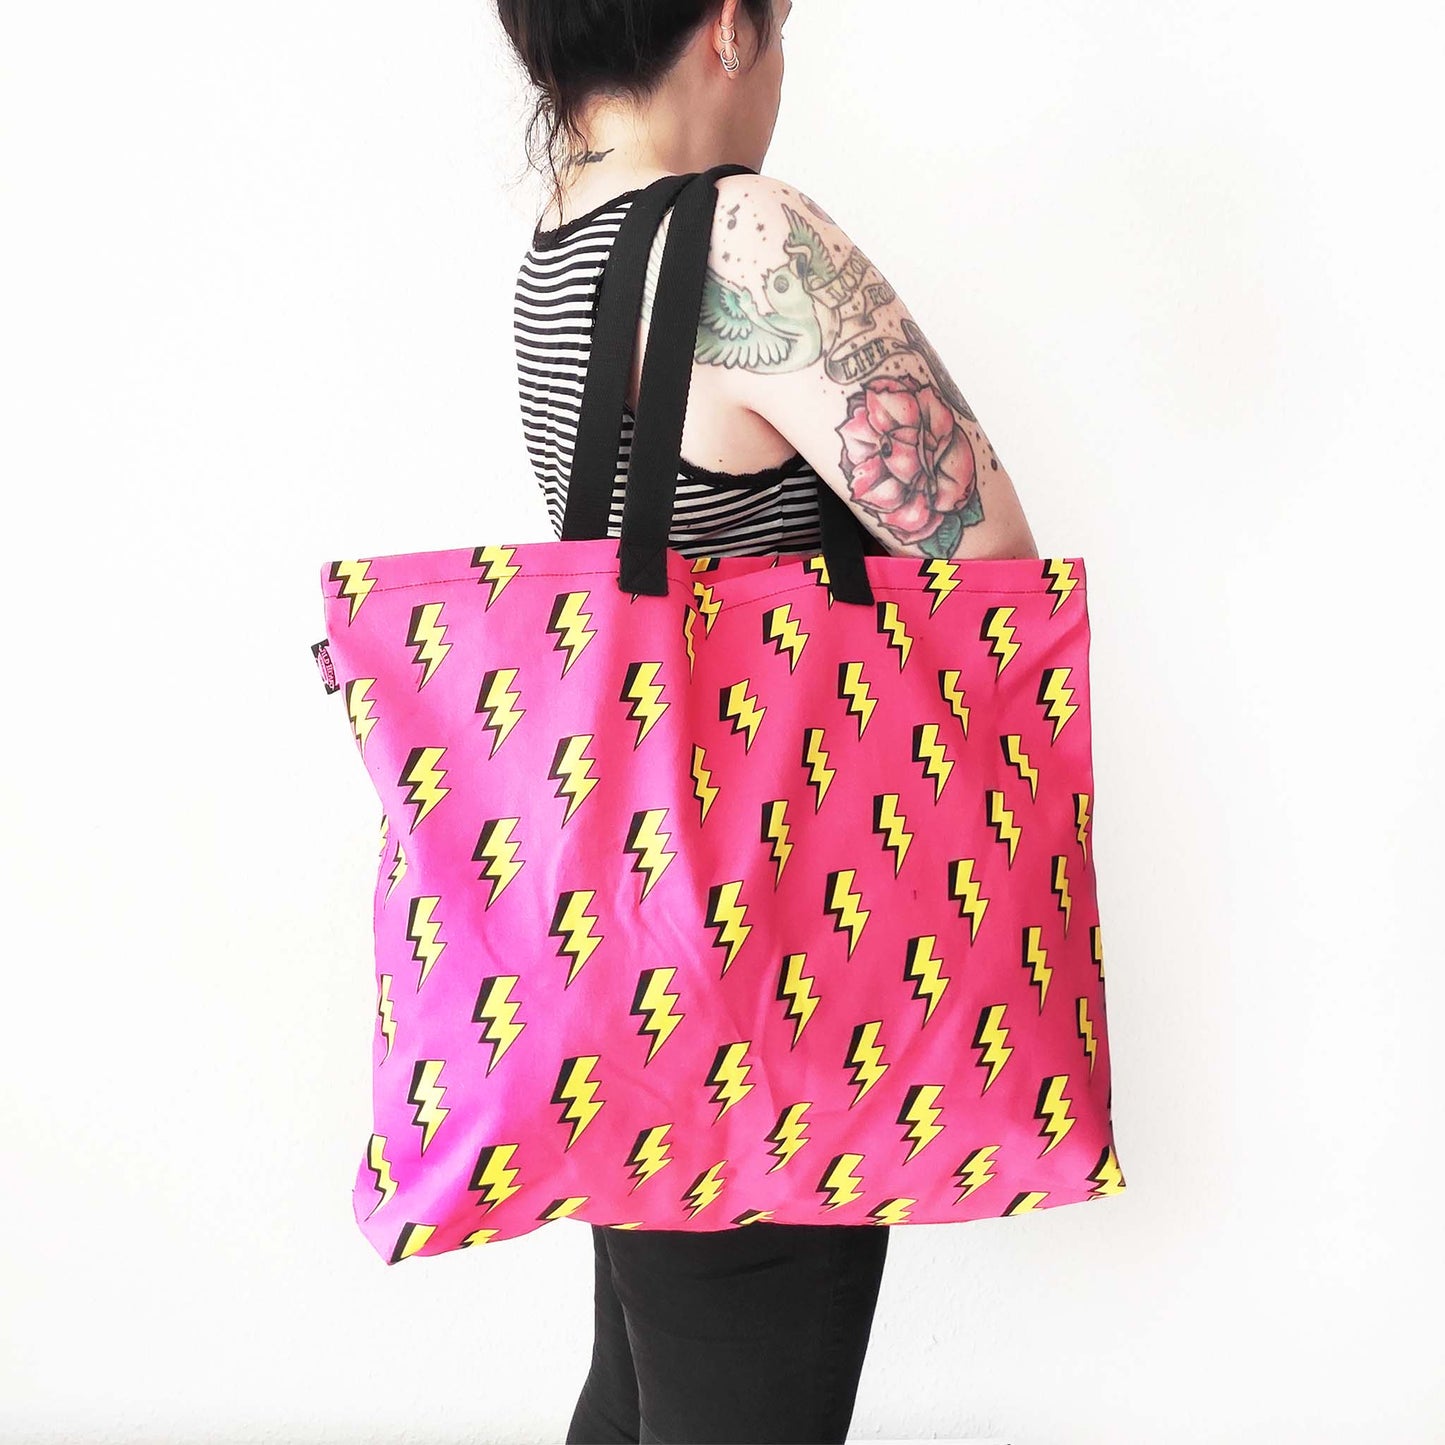 Shopper Tasche mit auffälligen Blitzmotiv auf leuchtend pinkem Hintergrund.